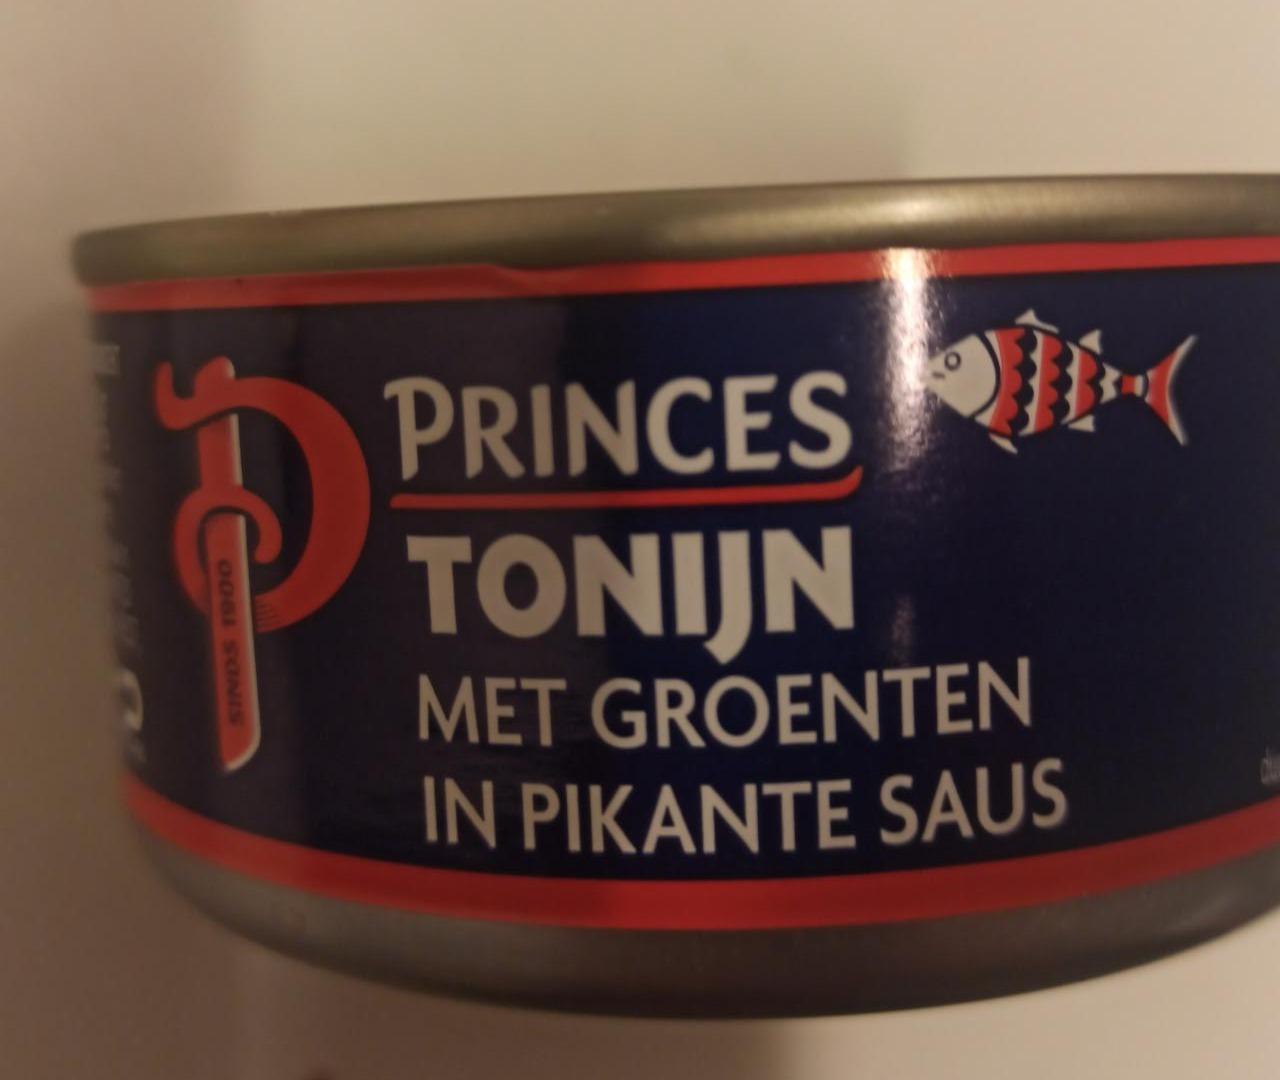 Fotografie - Tonijn met groenten in pikante saus Princes